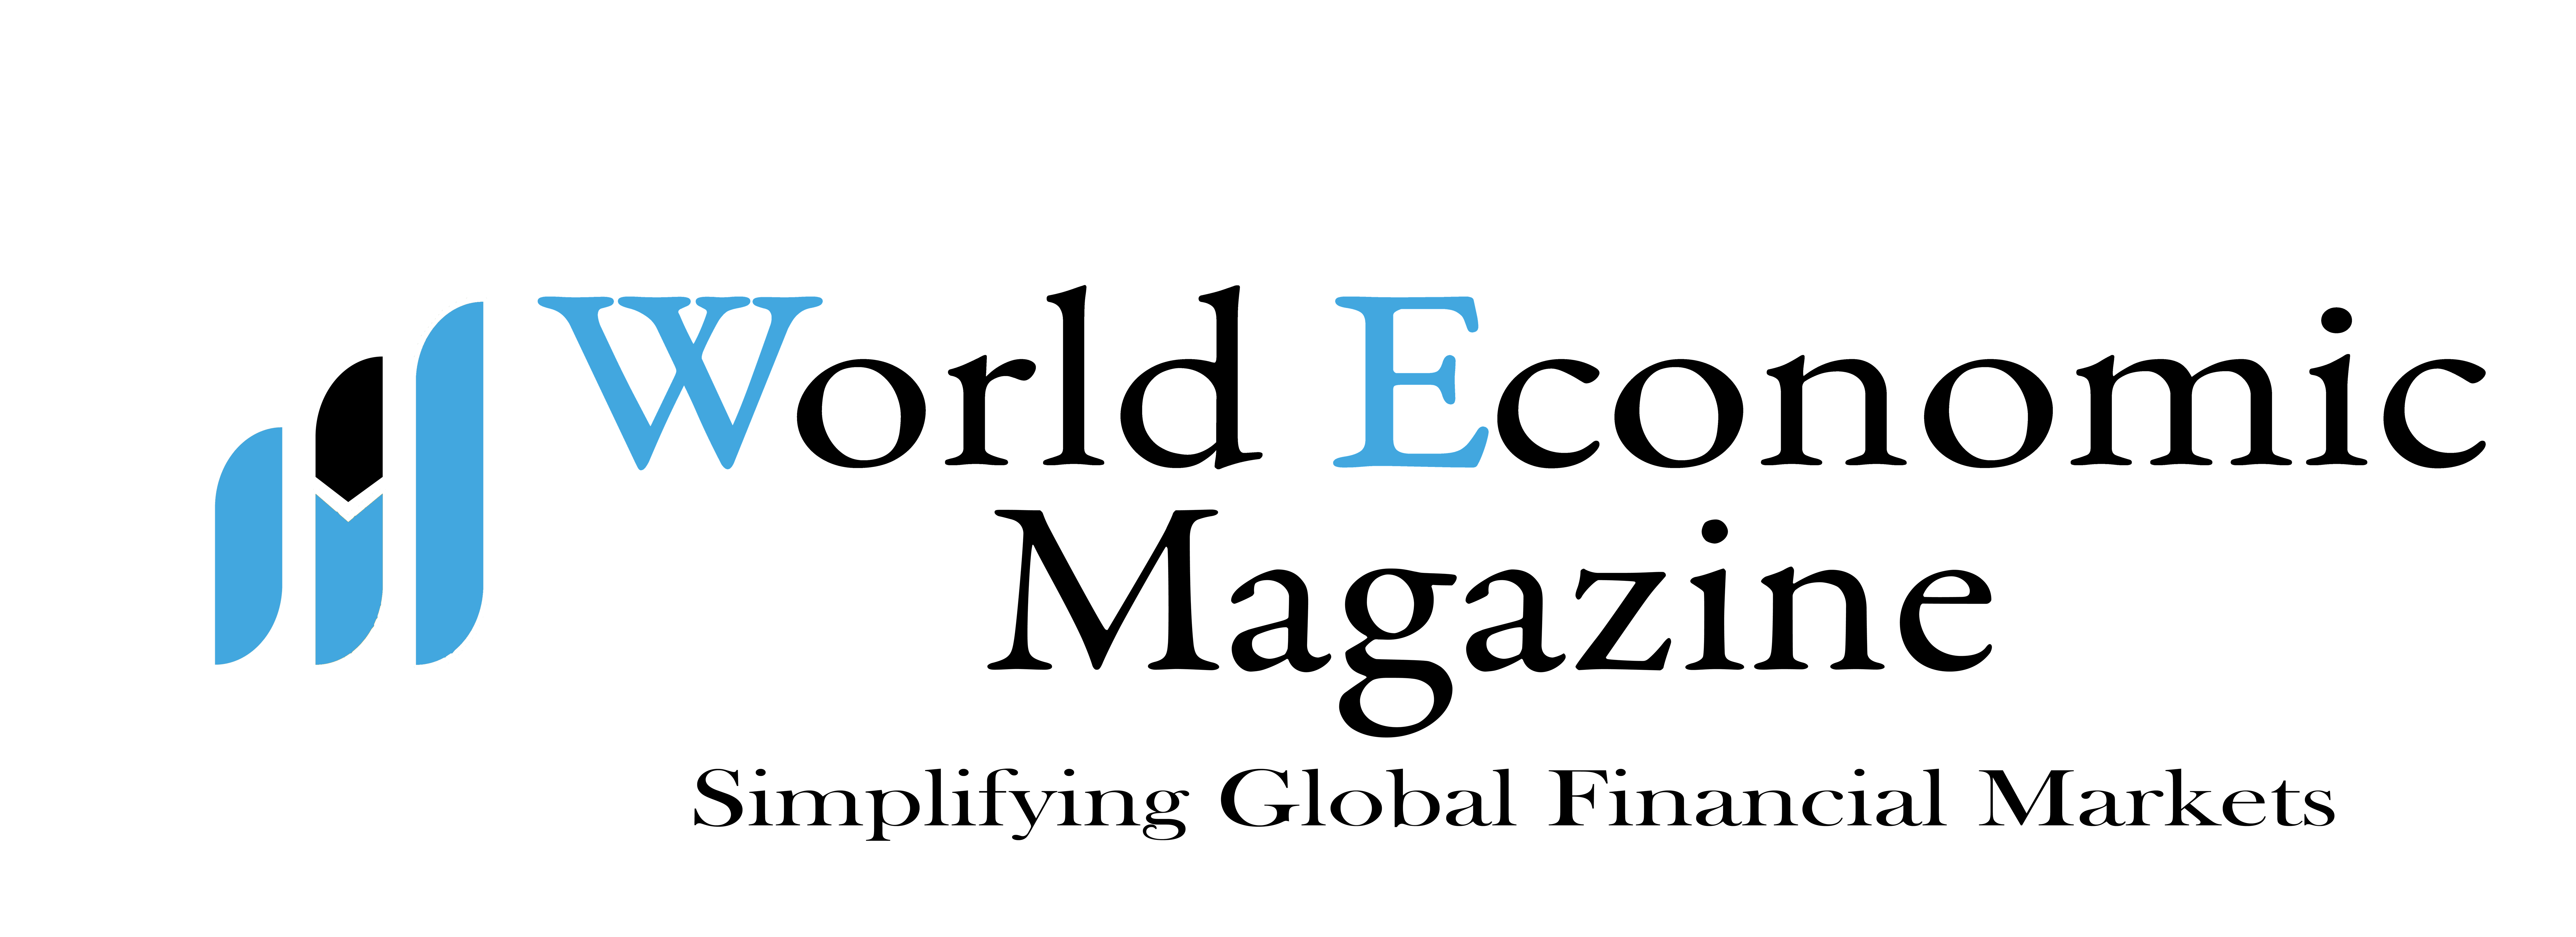 World Economic Magazine